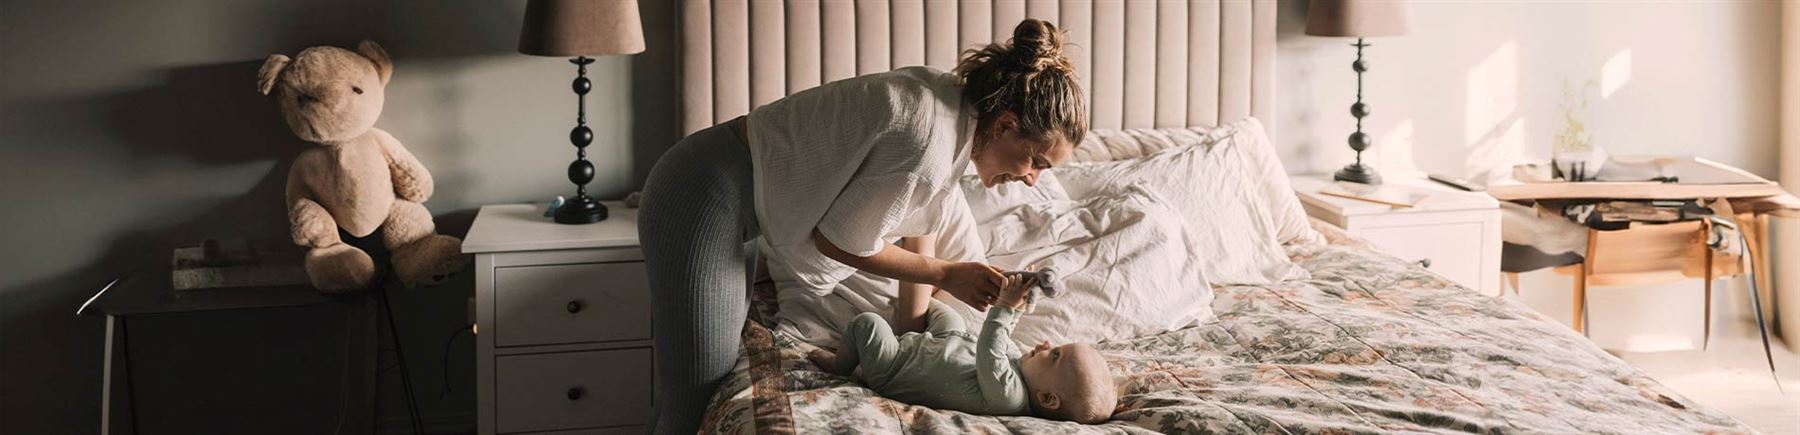 En mamma som gosar med sin bebis som ligger på sängen.